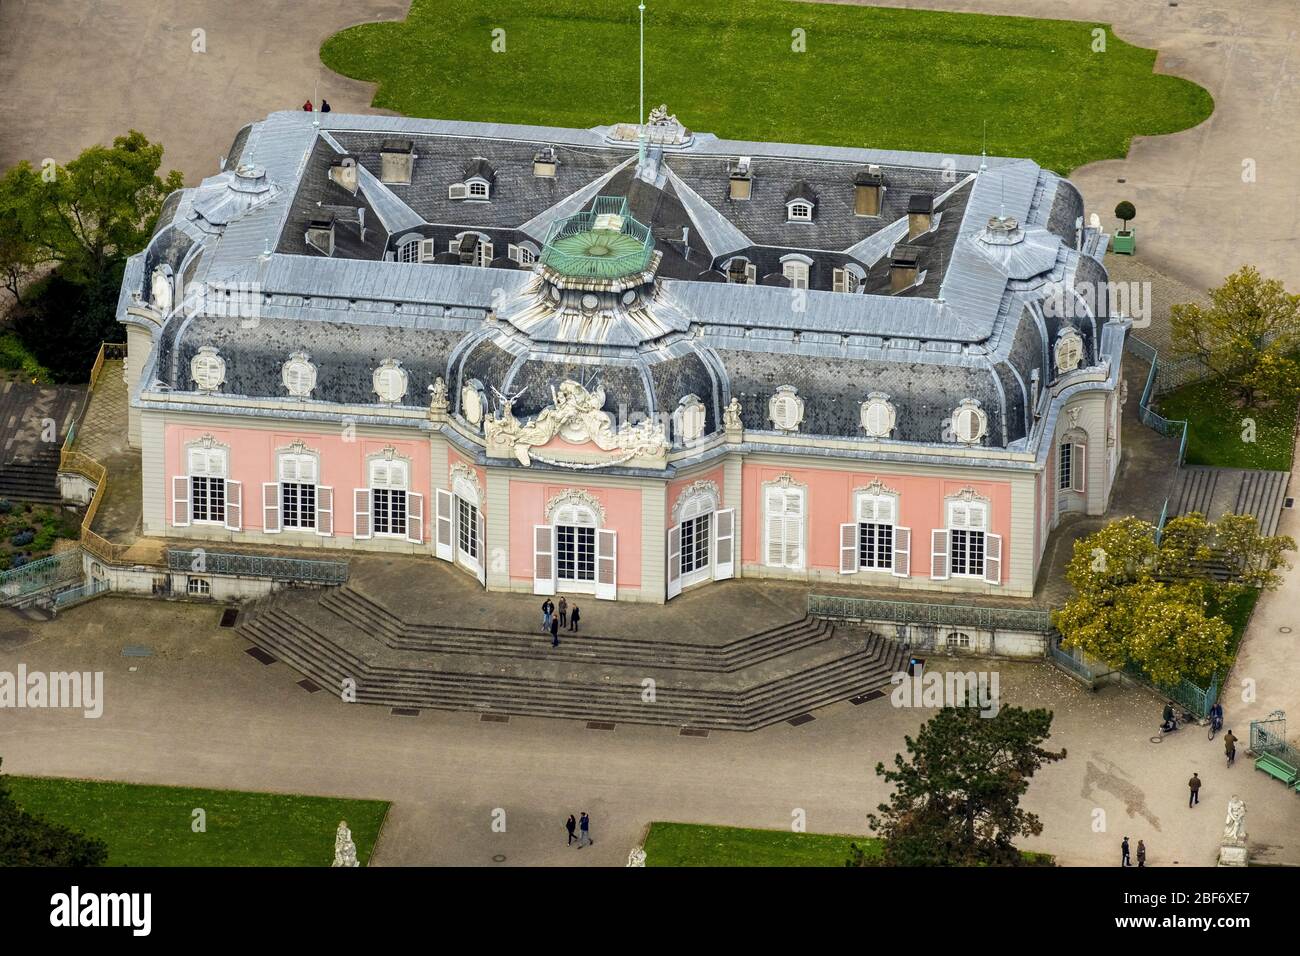 , Palace Benrath in Duesseldorf, 23.04.2016, aerial view, 23.04.2016, aerial view, Germany, North Rhine-Westphalia, Lower Rhine, Dusseldorf Stock Photo